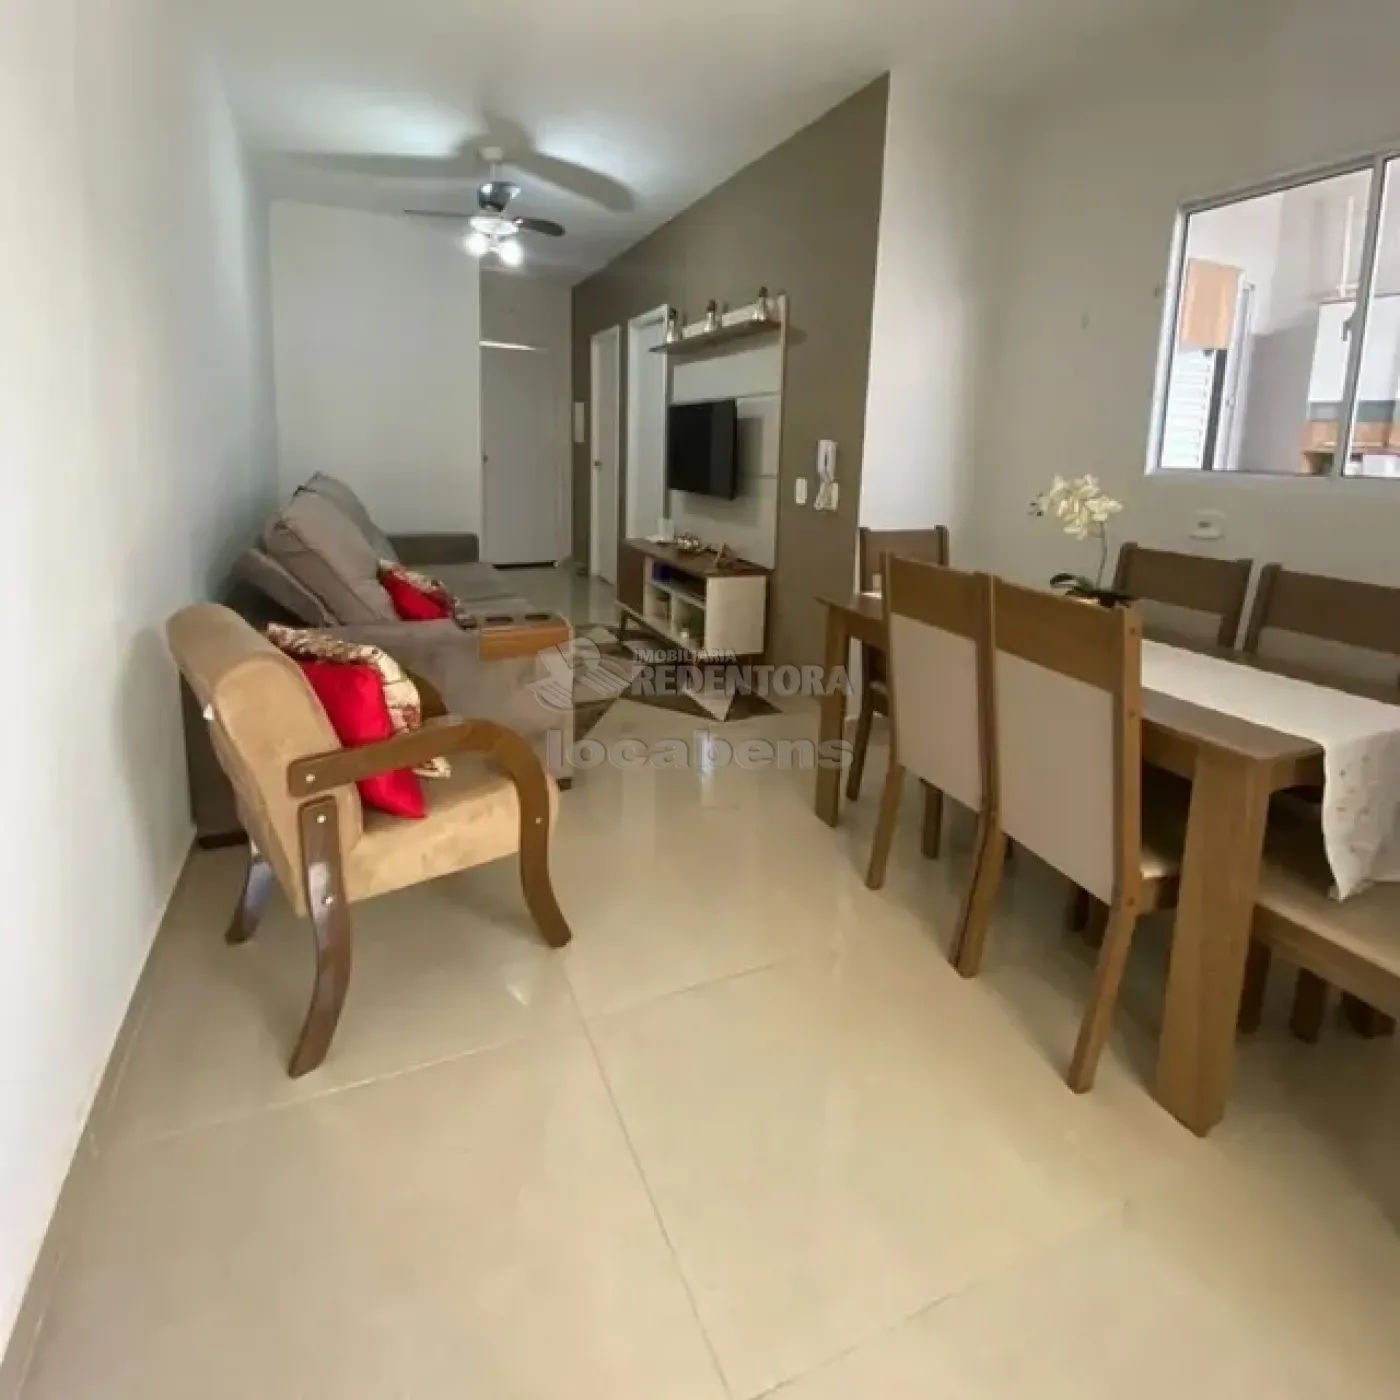 Comprar Casa / Condomínio em São José do Rio Preto apenas R$ 245.000,00 - Foto 6